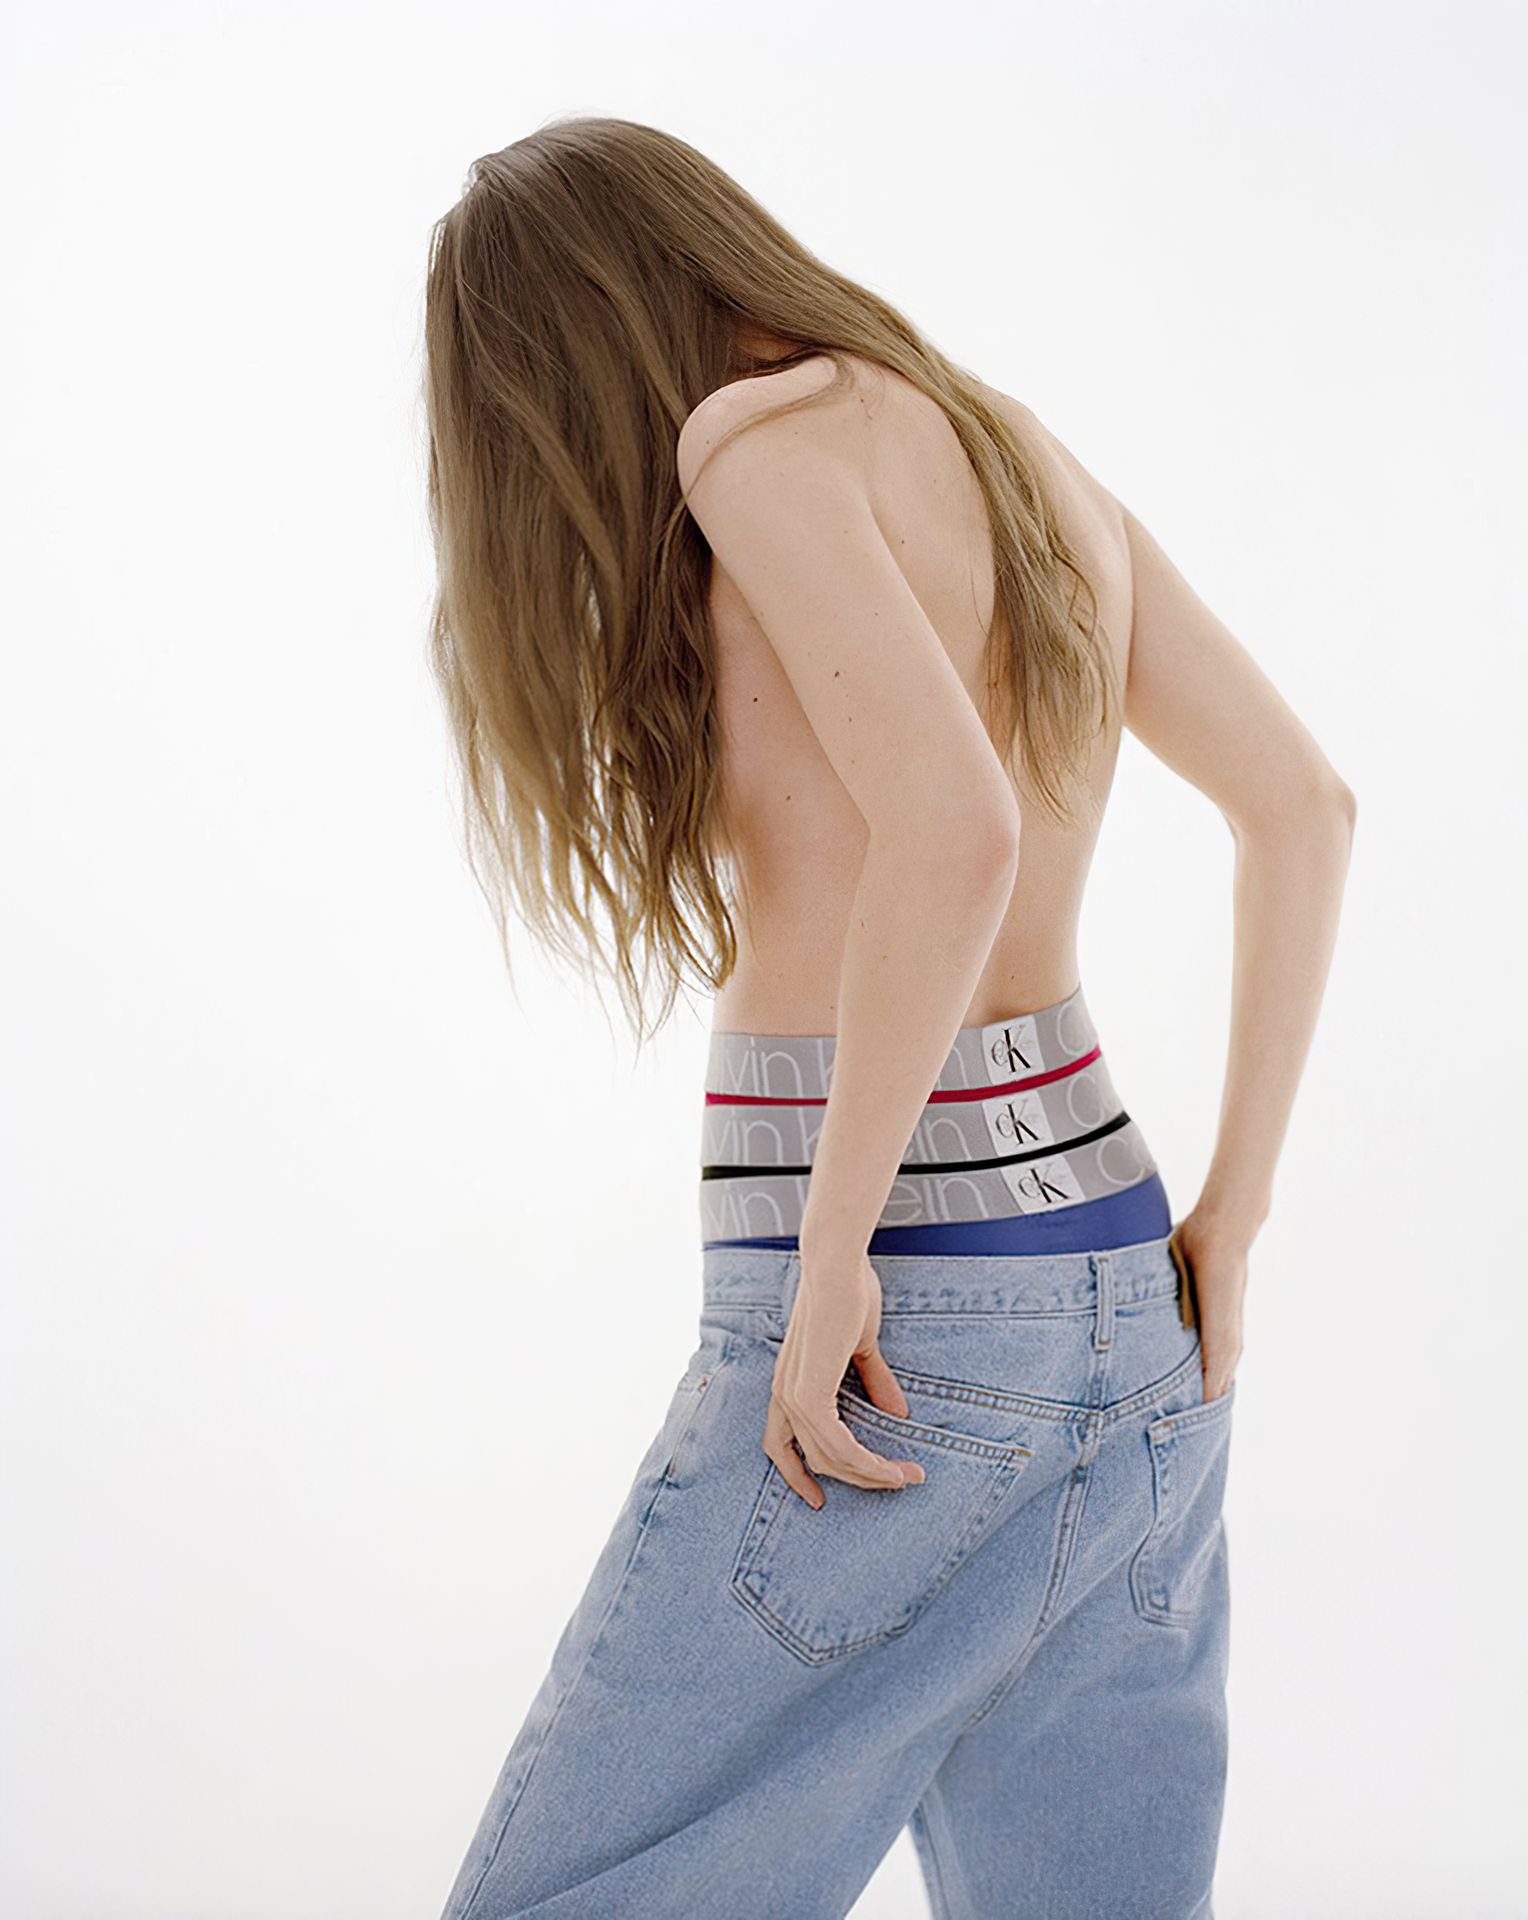 Gigi Hadid Poses for a New Calvin Klein Campaign (13 Photos)